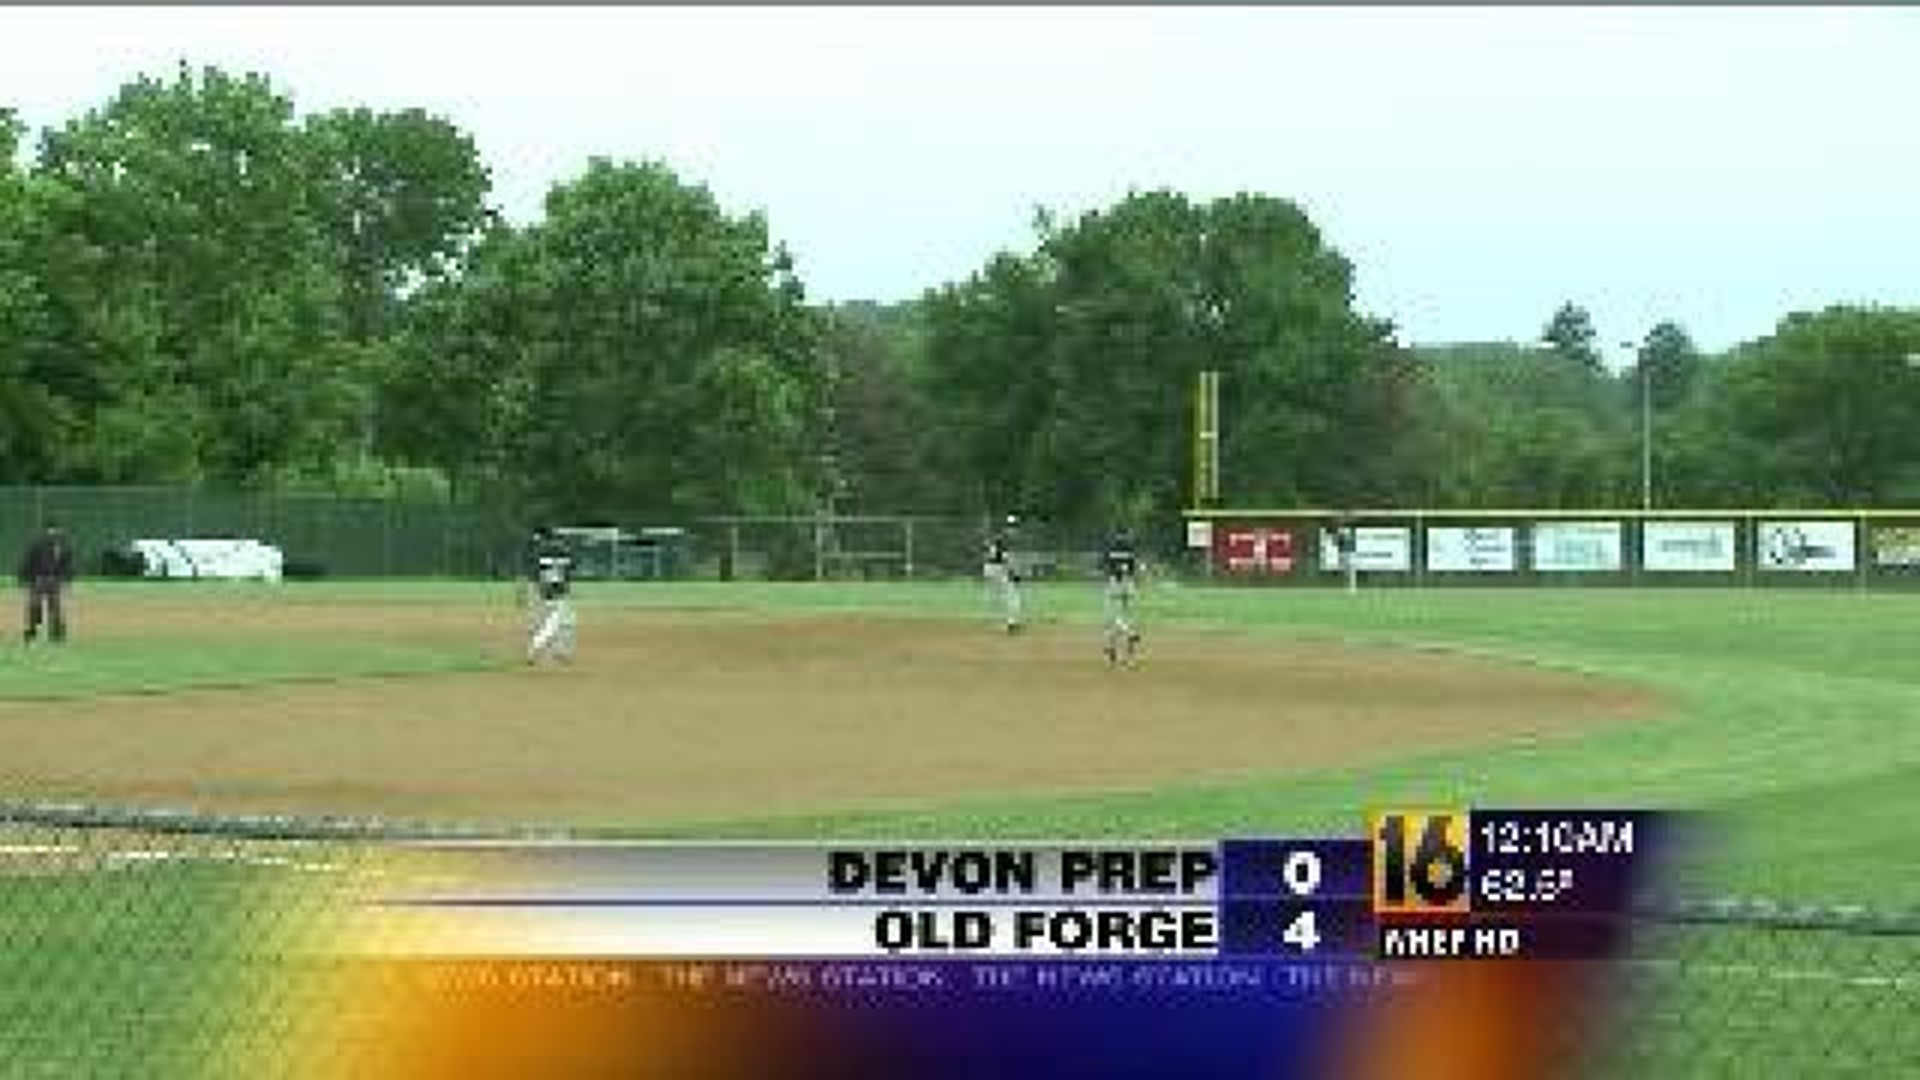 Old Forge vs. Devon Prep